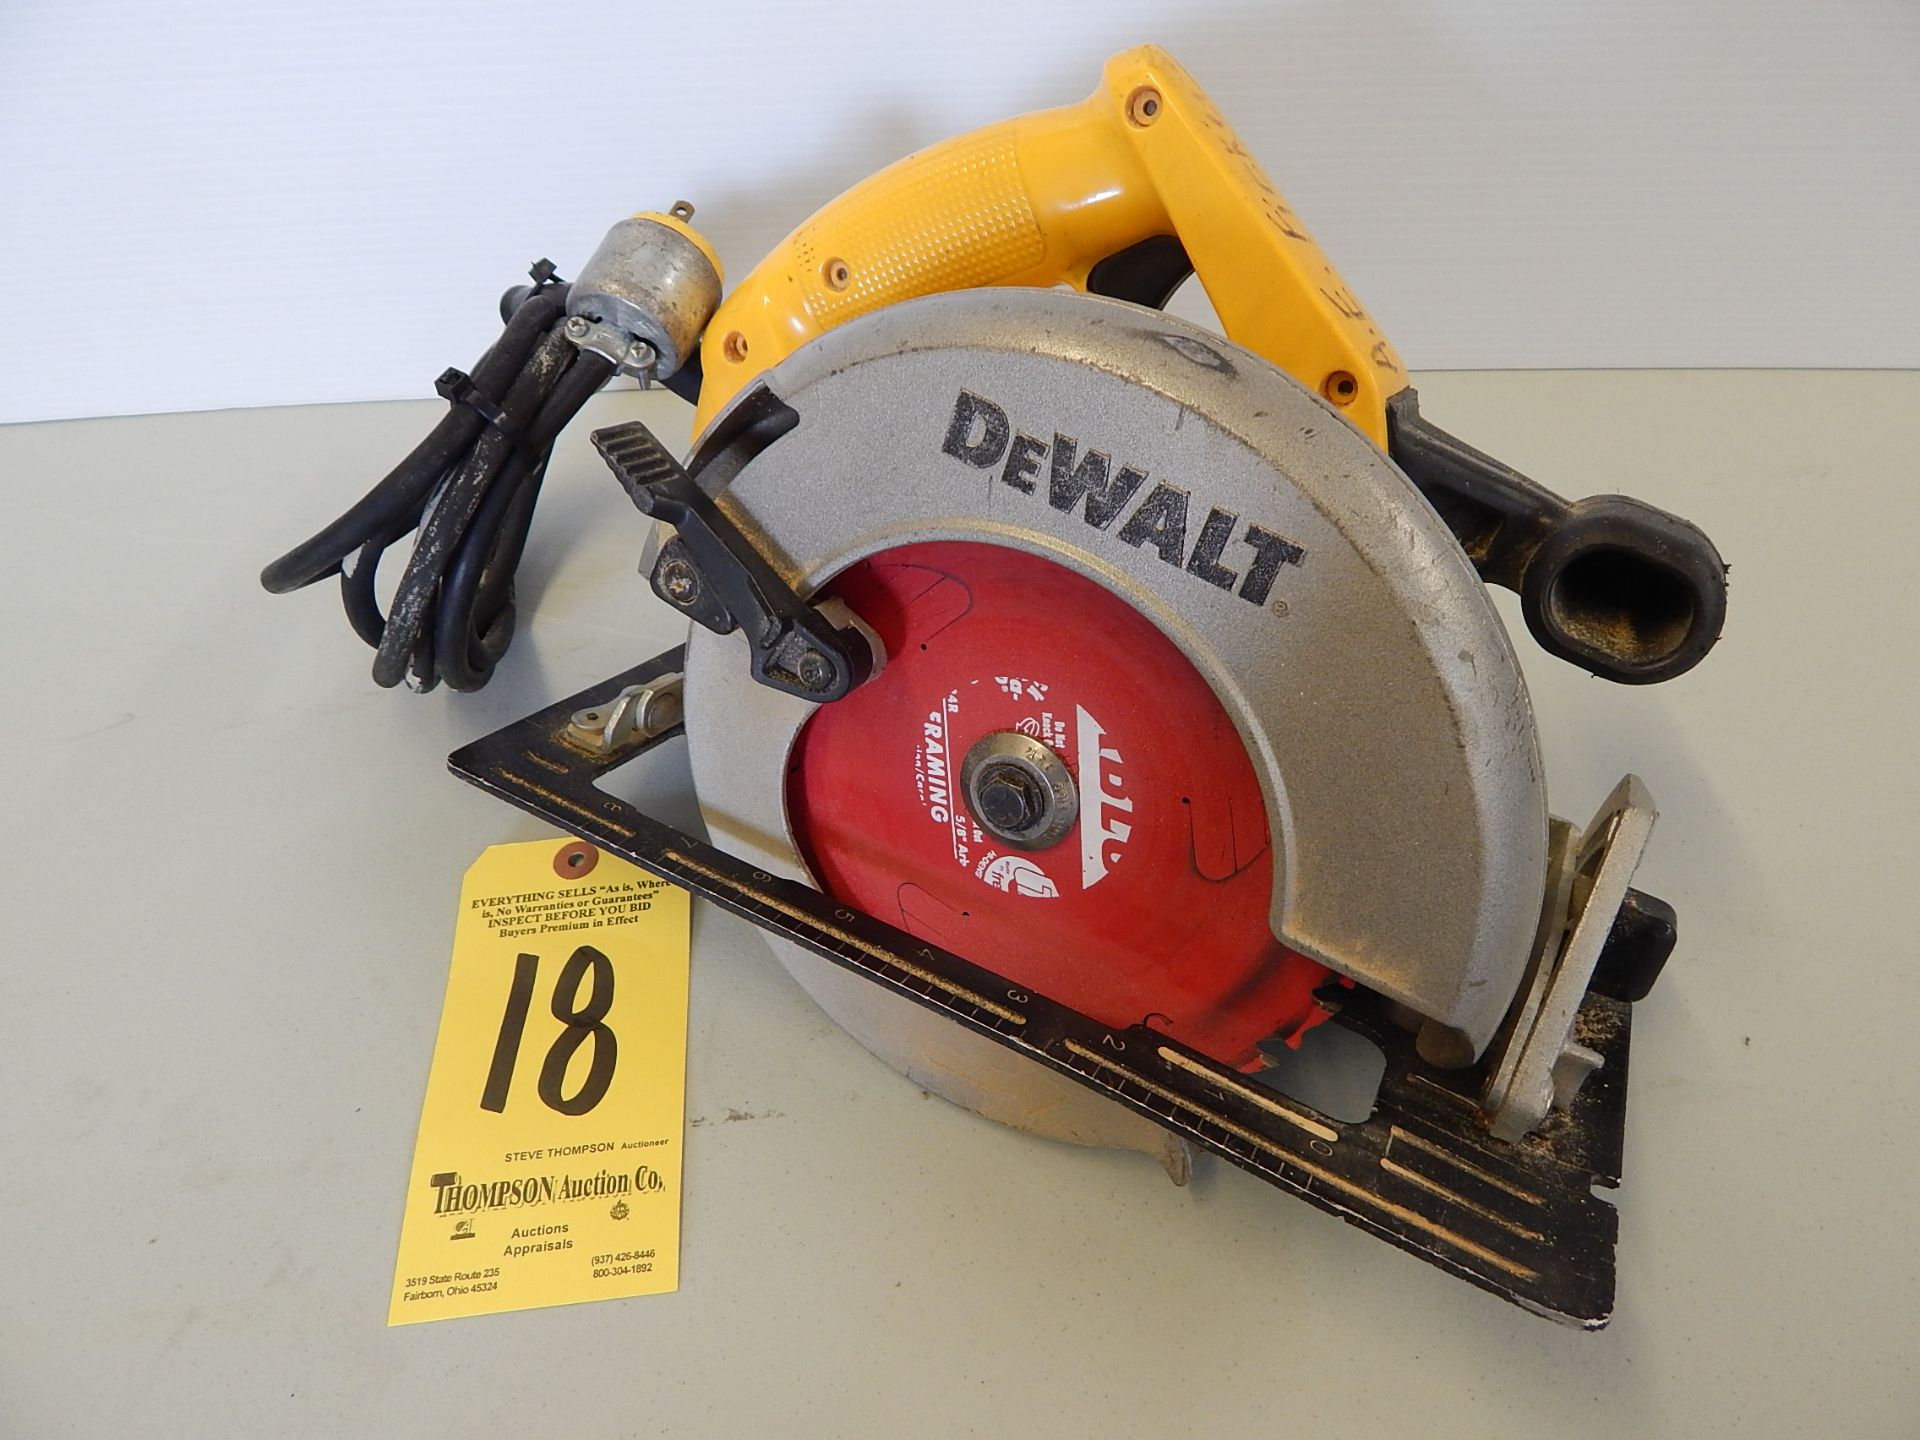 Dewalt DW 362 Circular Saw